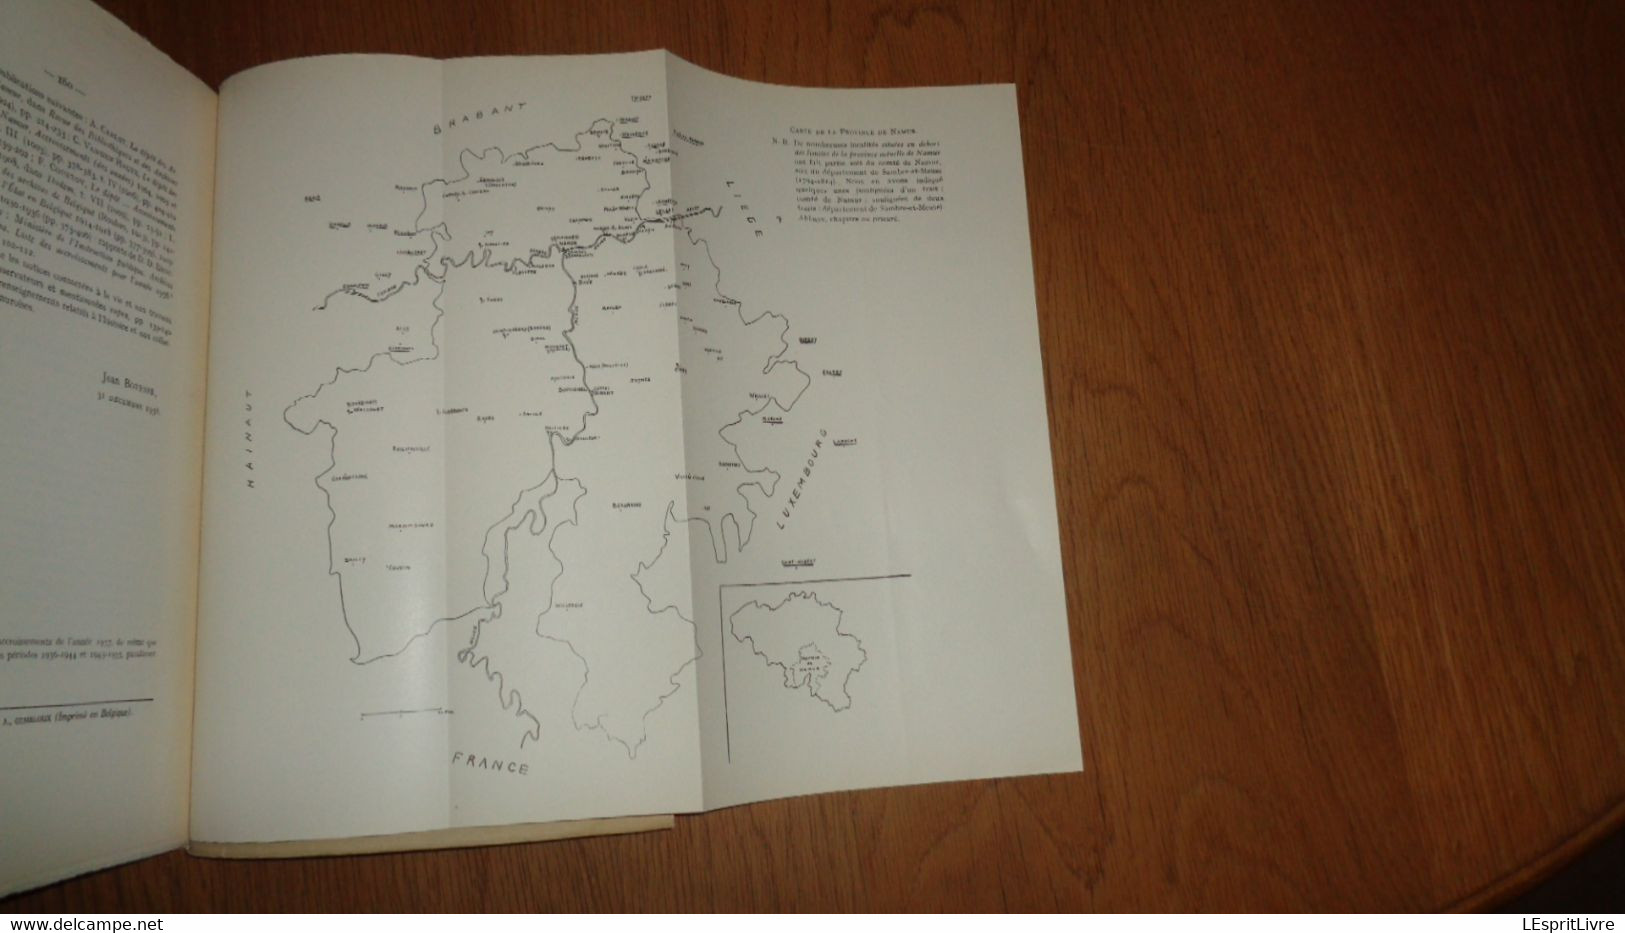 ANNALES DE LA SOCIETE ARCHEOLOGIQUE DE NAMUR Tome XLIX 1è Livraison 1958 Régionalisme Taviers Seigneurs Hour Famenne